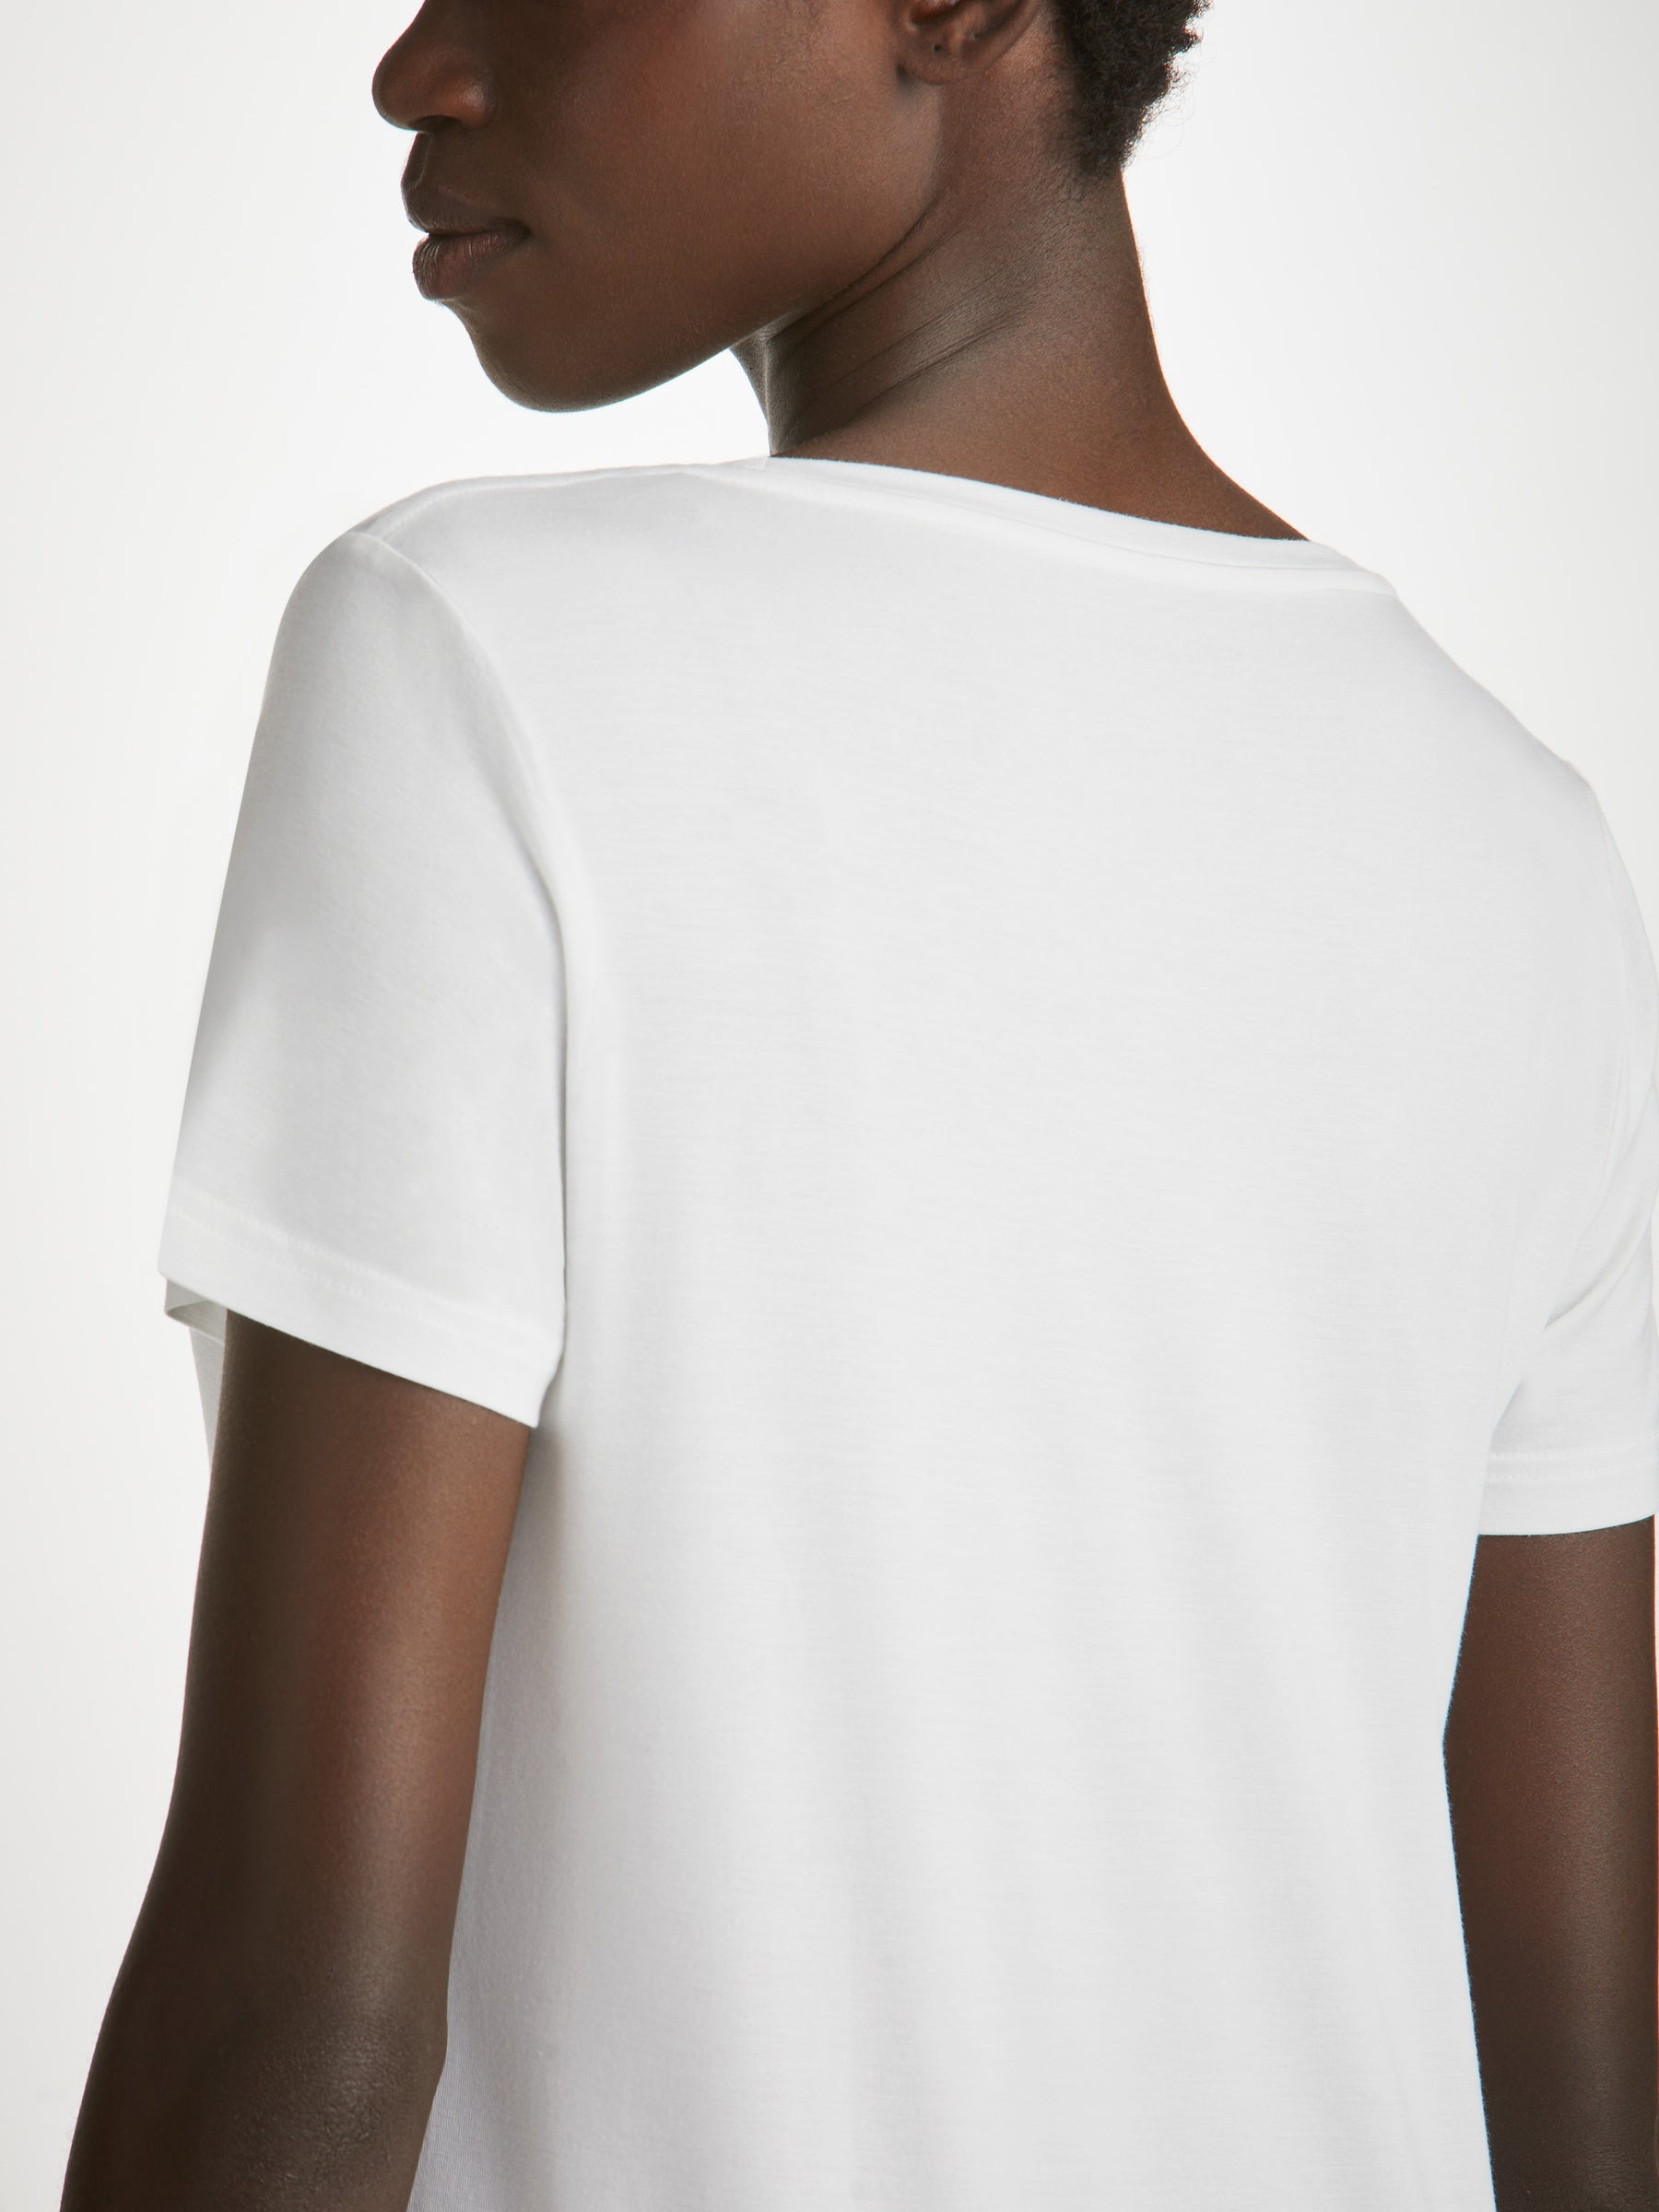 Women's V-Neck T-Shirt Lara Micro Modal Stretch White